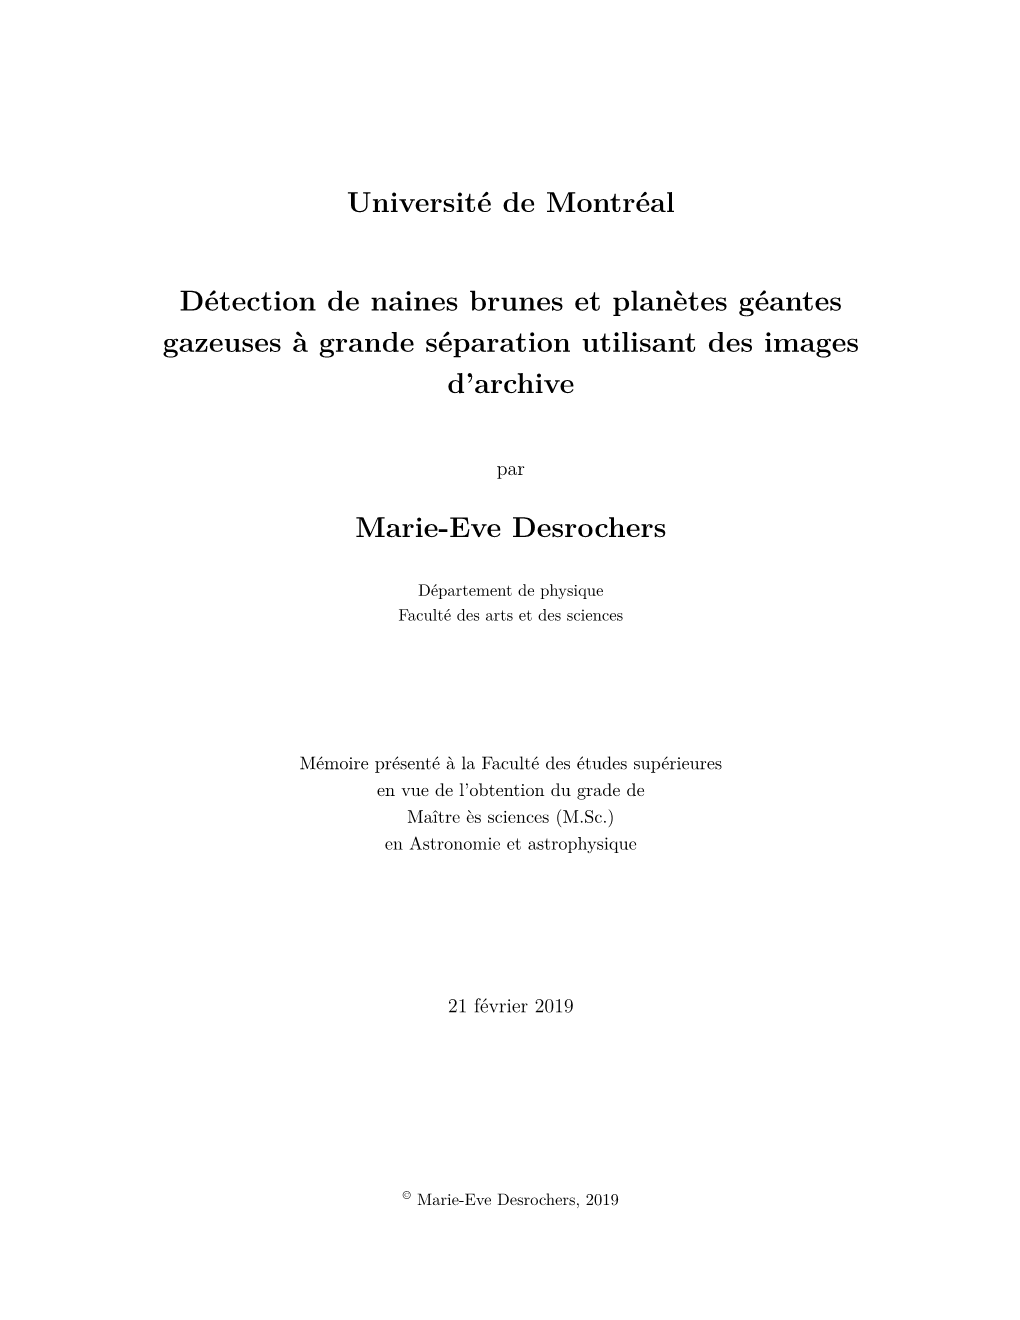 Université De Montréal Détection De Naines Brunes Et Planètes Géantes Gazeuses À Grande Séparation Utilisant Des Images D